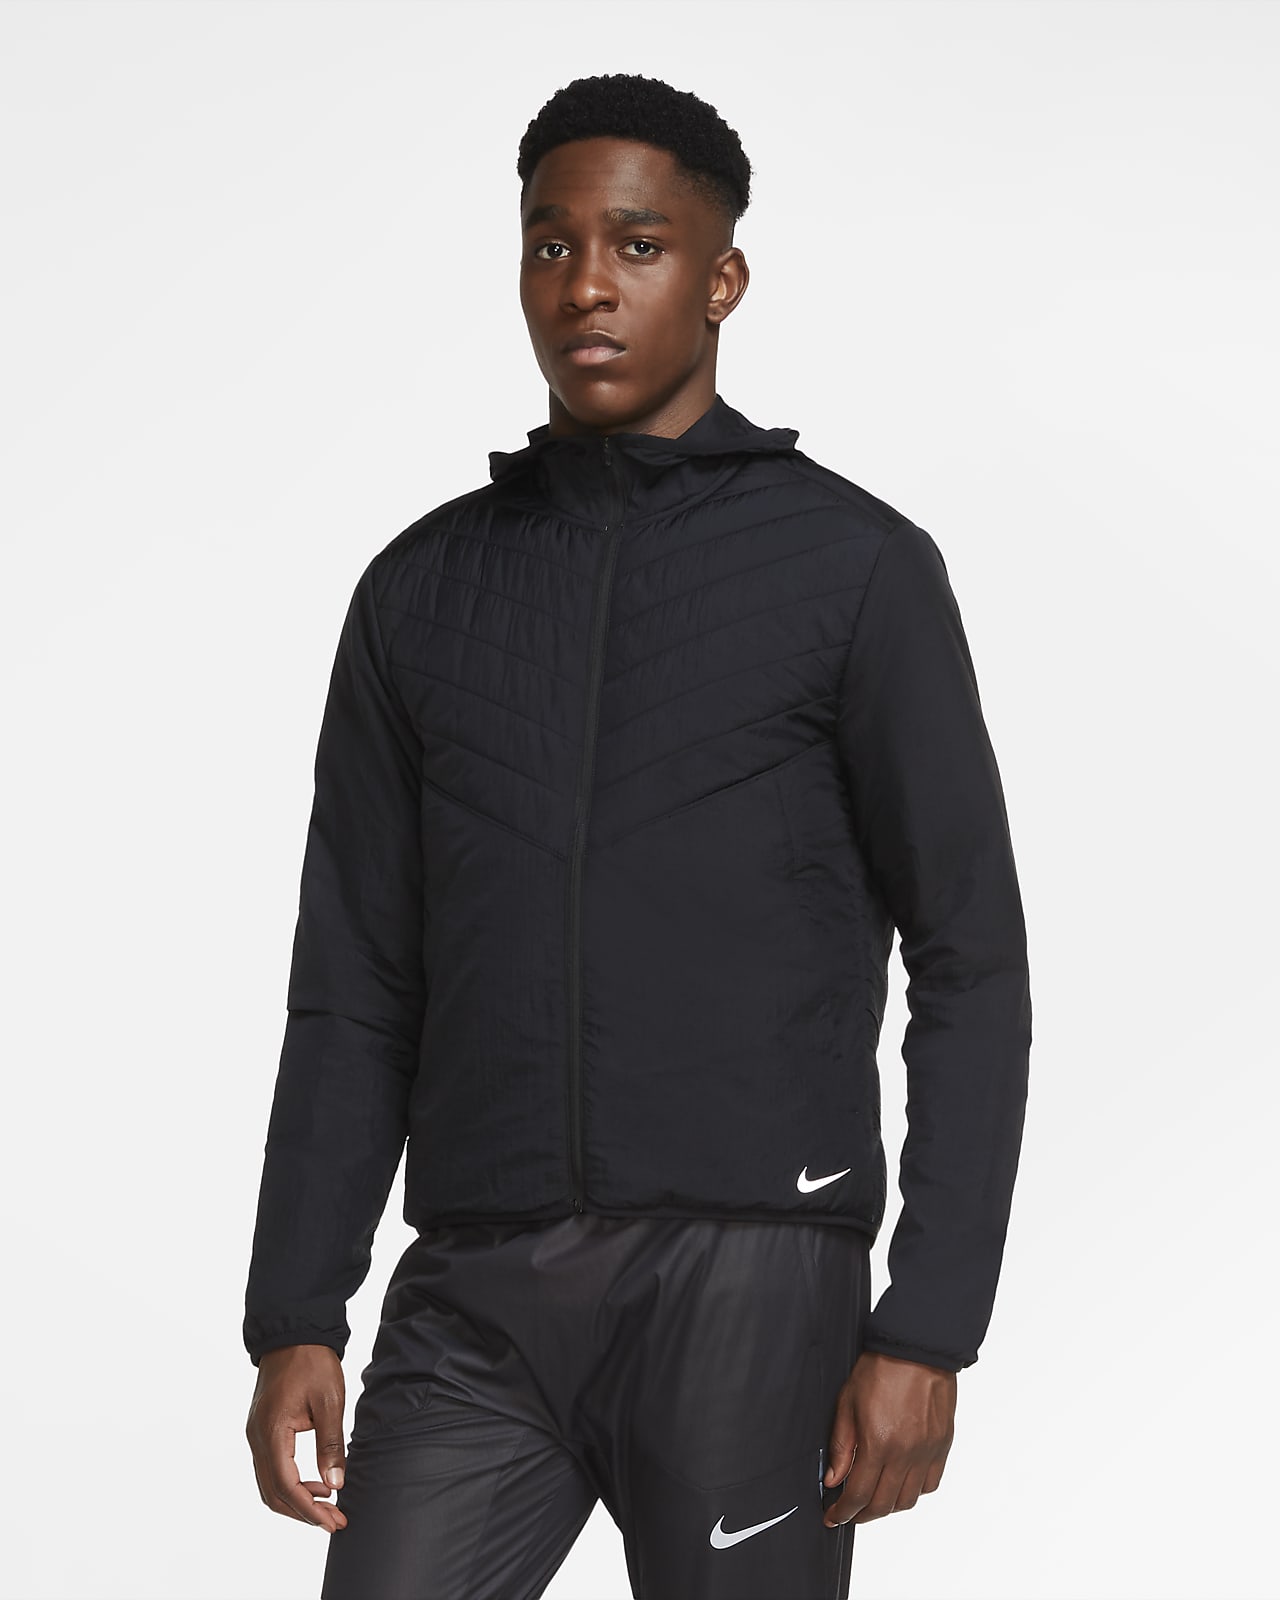 Nike AeroLayer Men's Running Jacket 